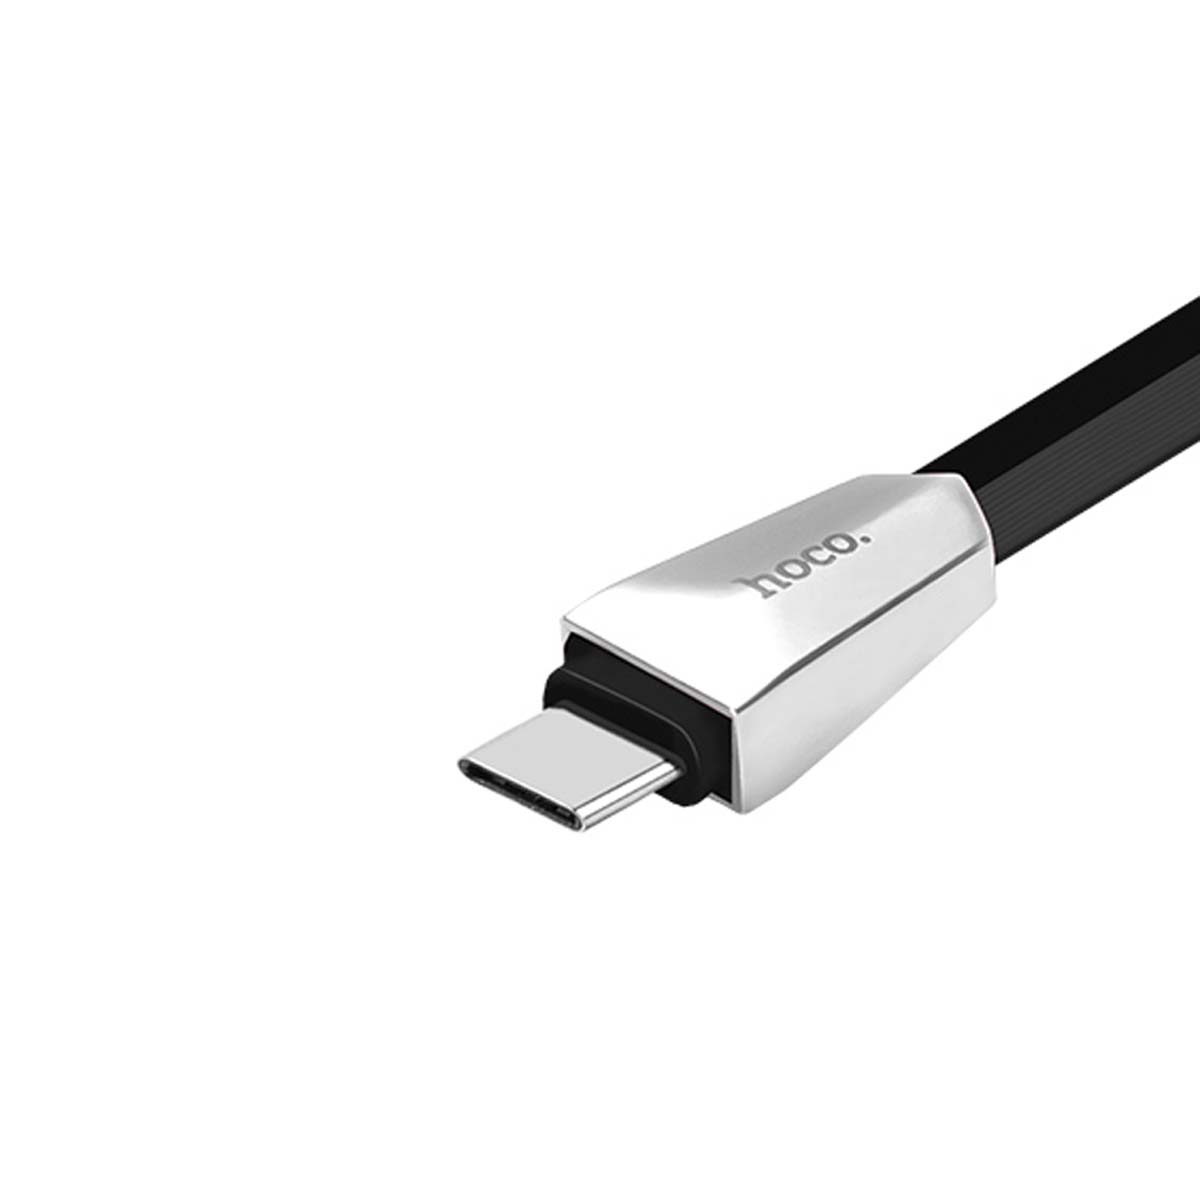 Кабель HOCO X4 Zinc Alloy rhombus USB Type C, 2.4A, длина 1.2 метра, цвет черный